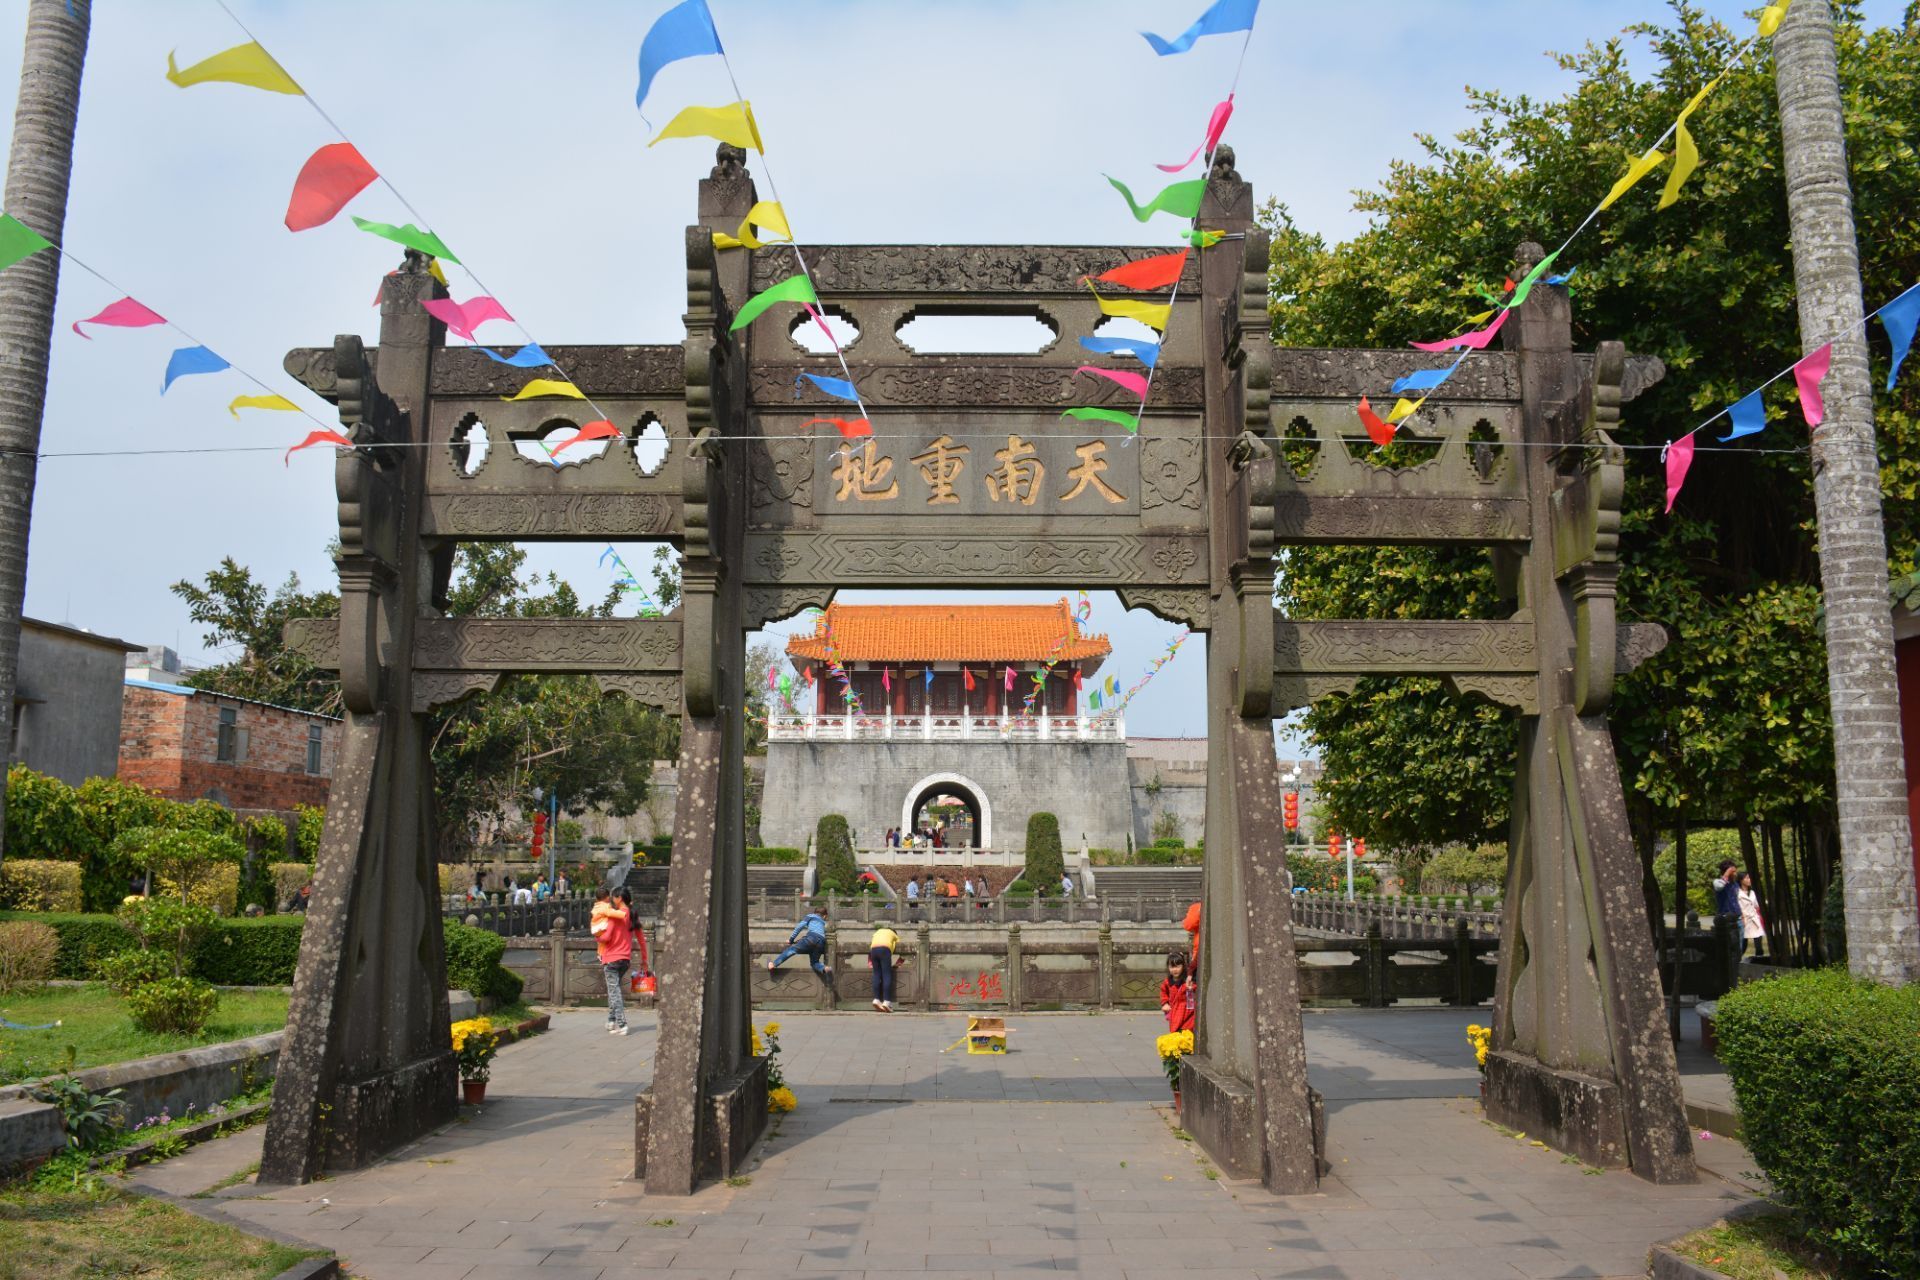 【携程攻略】雷州三元塔公园景点,三元塔公园是广东湛江雷州市的一个